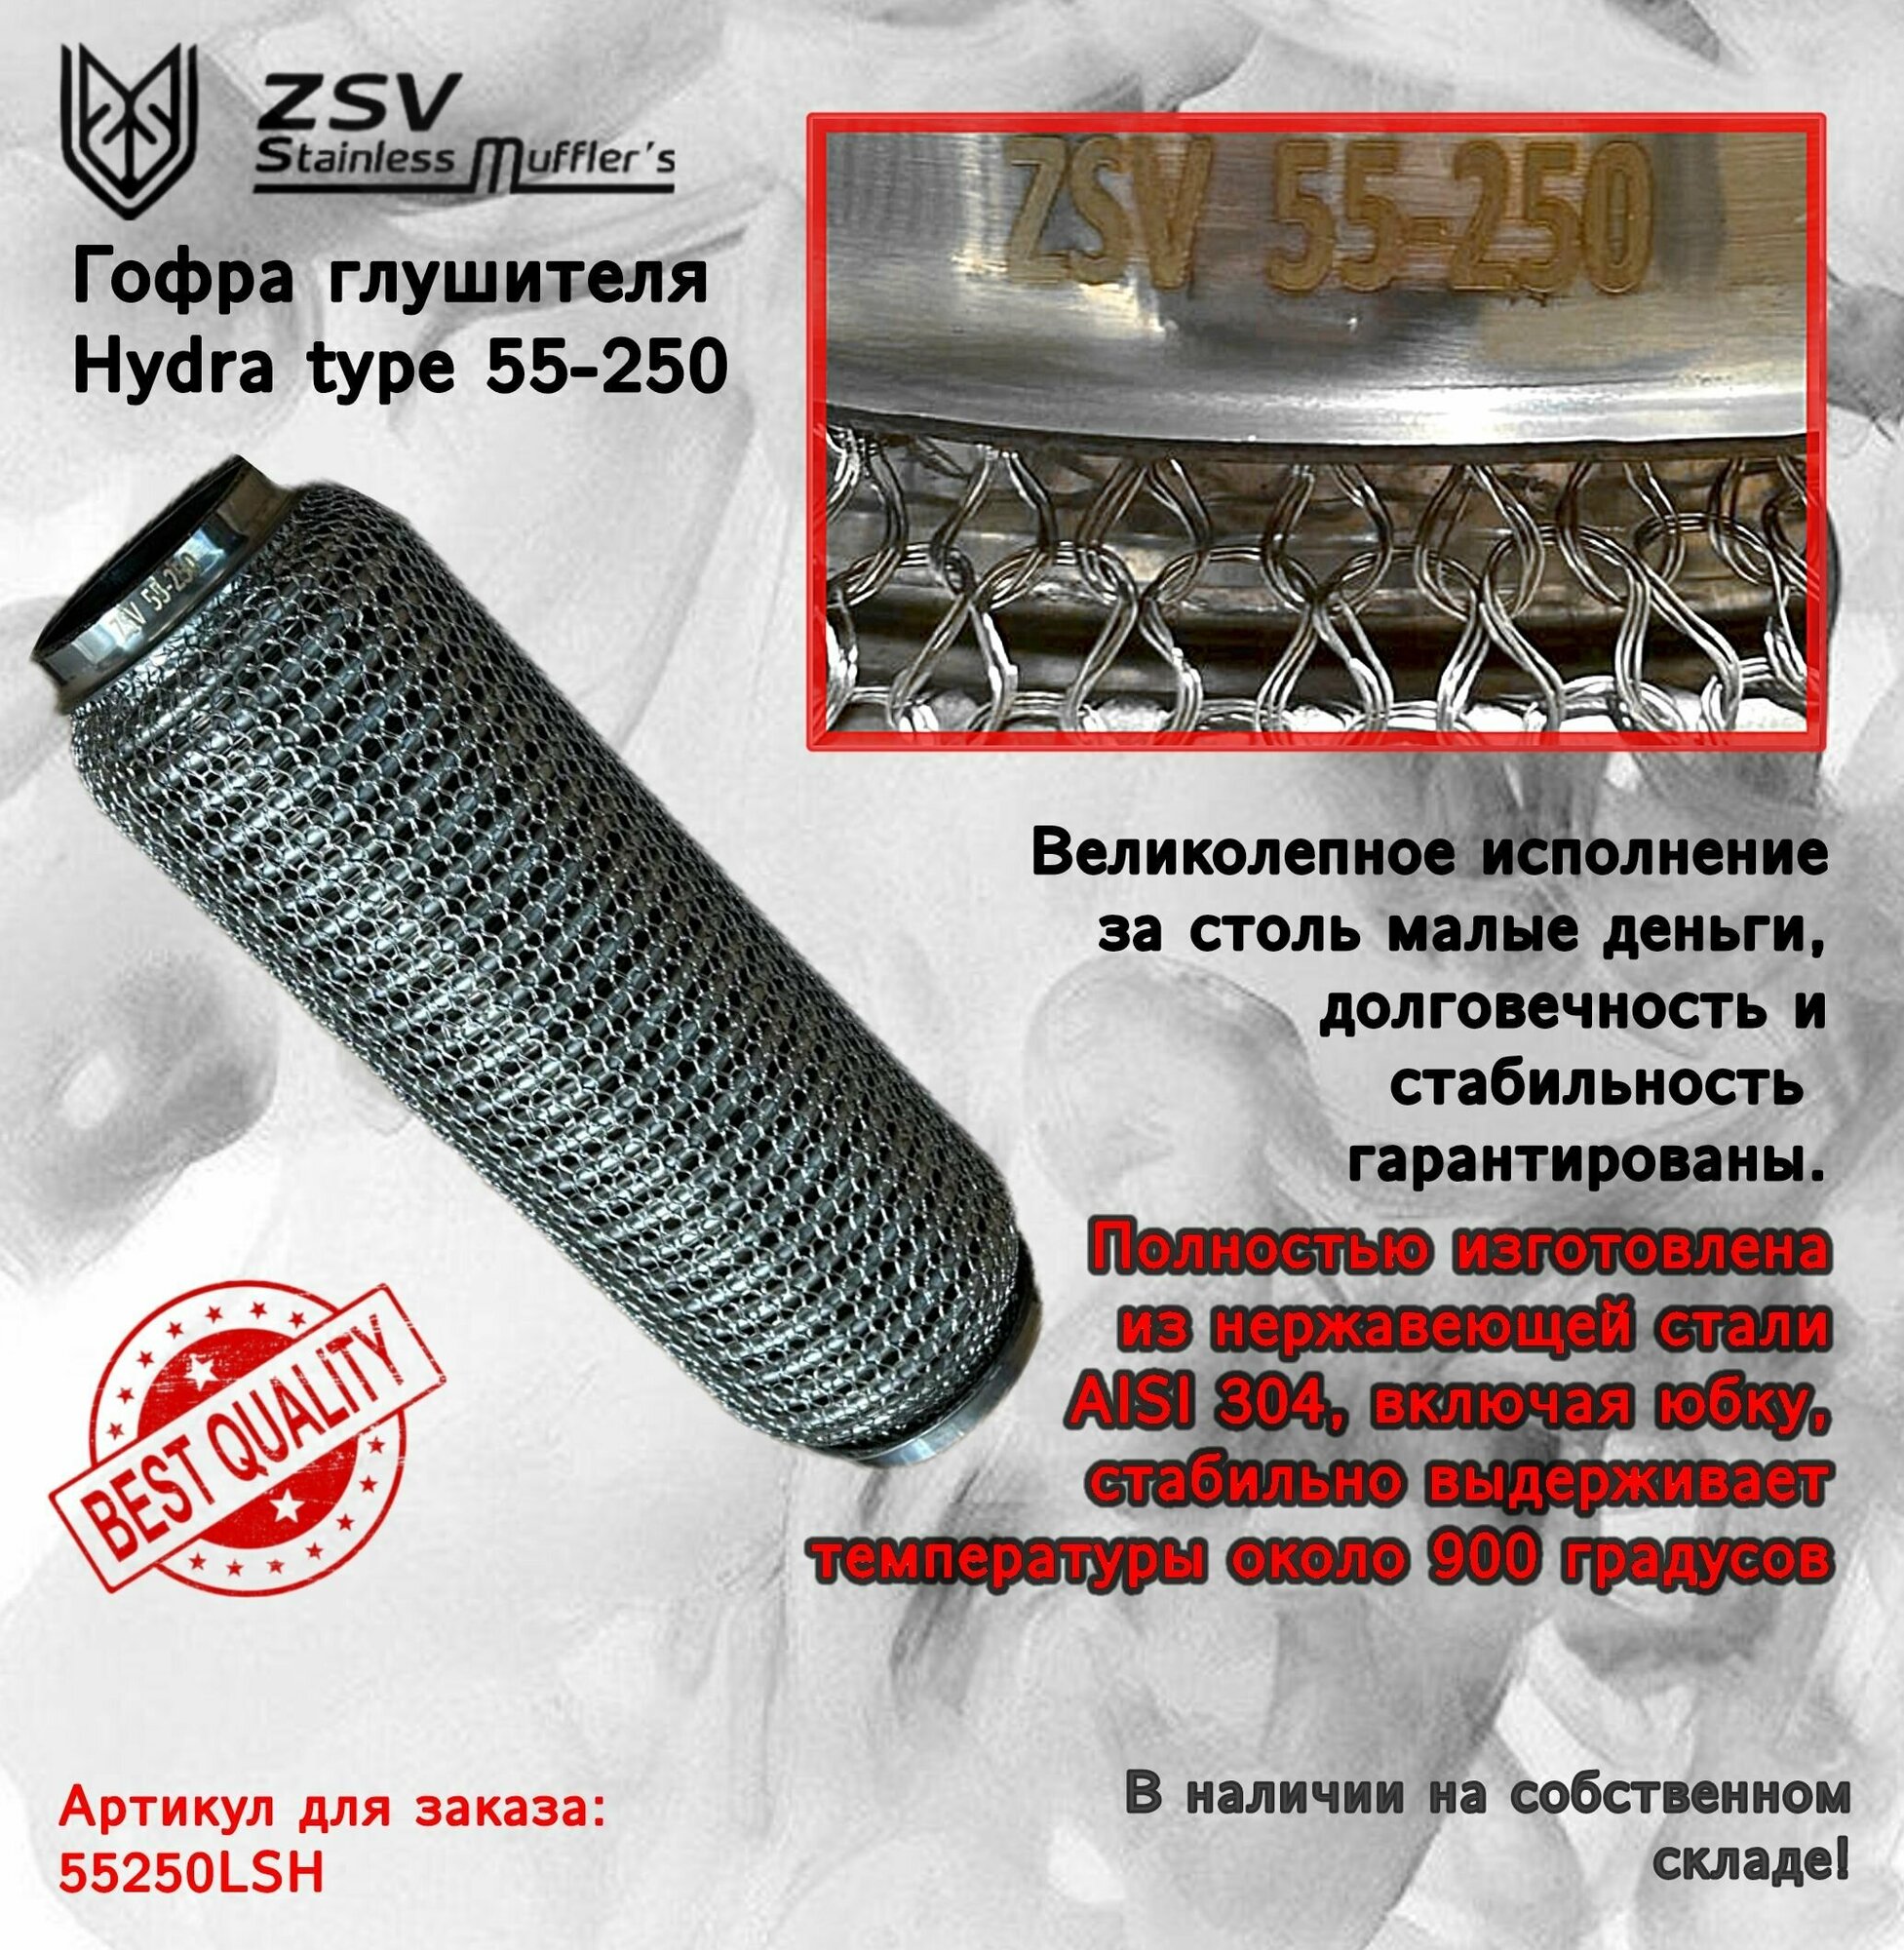 Гофра глушителя Hydra type 55-250 Улучшенная! полностью изготовлена из нержавеющей стали AISI 304